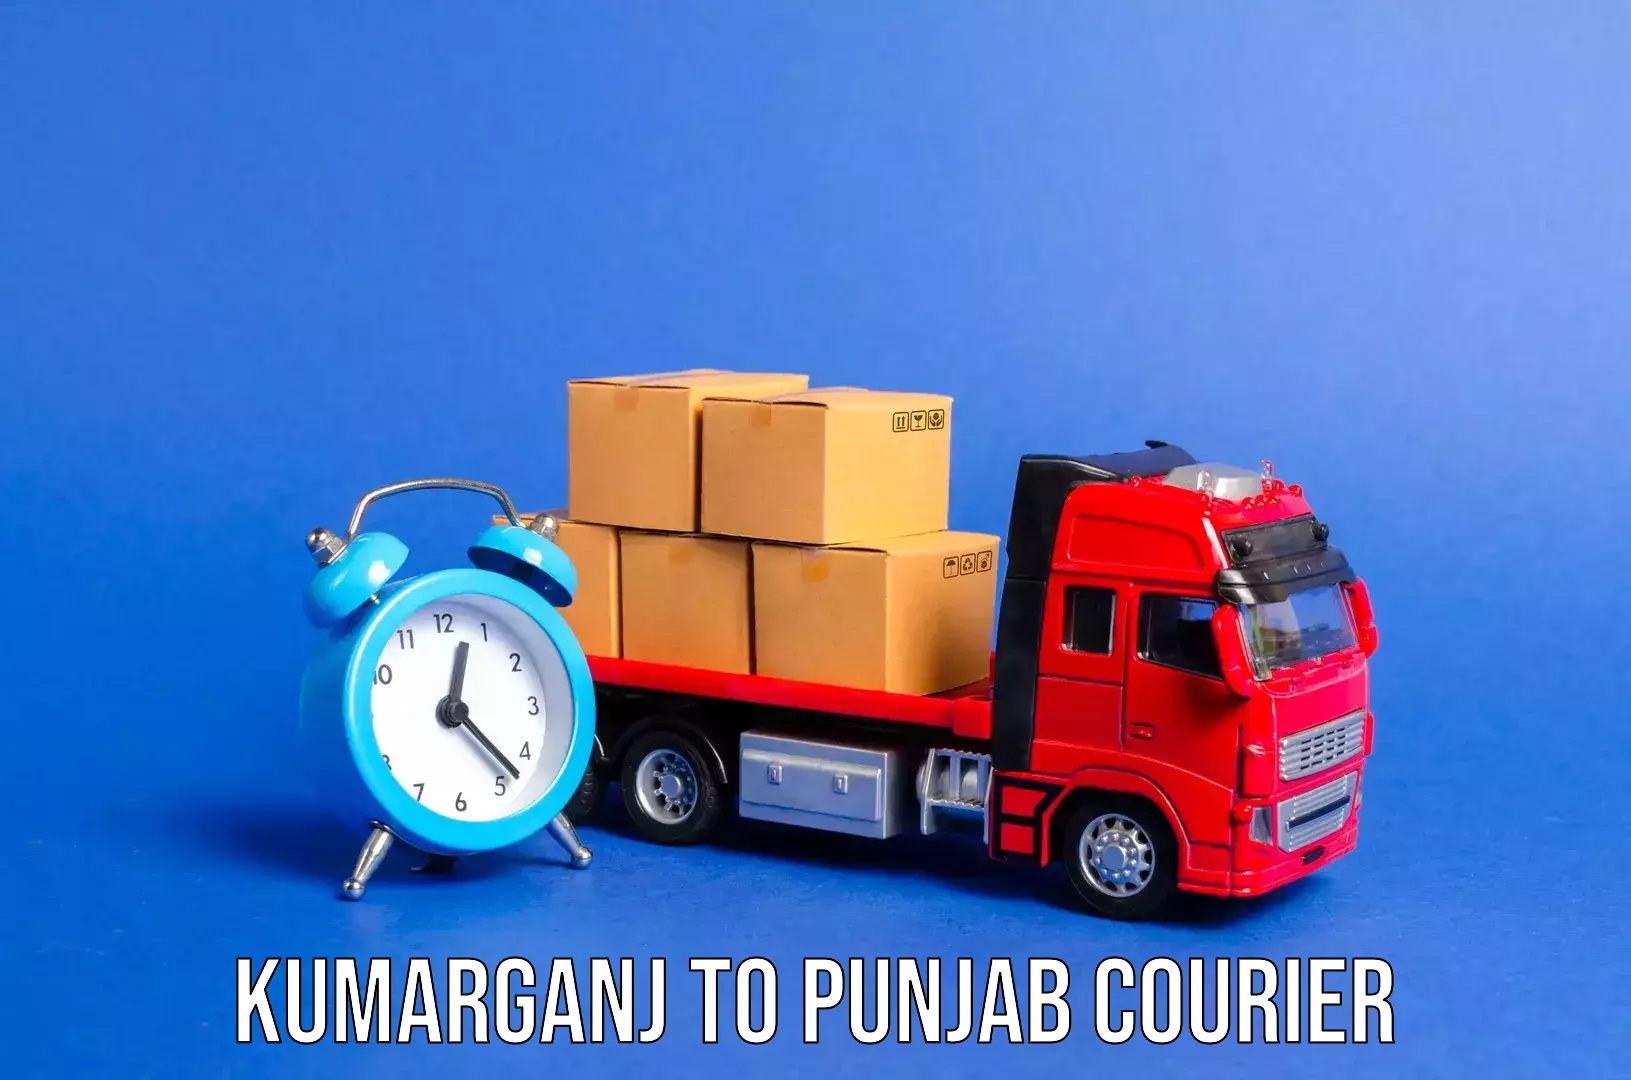 Same day luggage service Kumarganj to Punjab